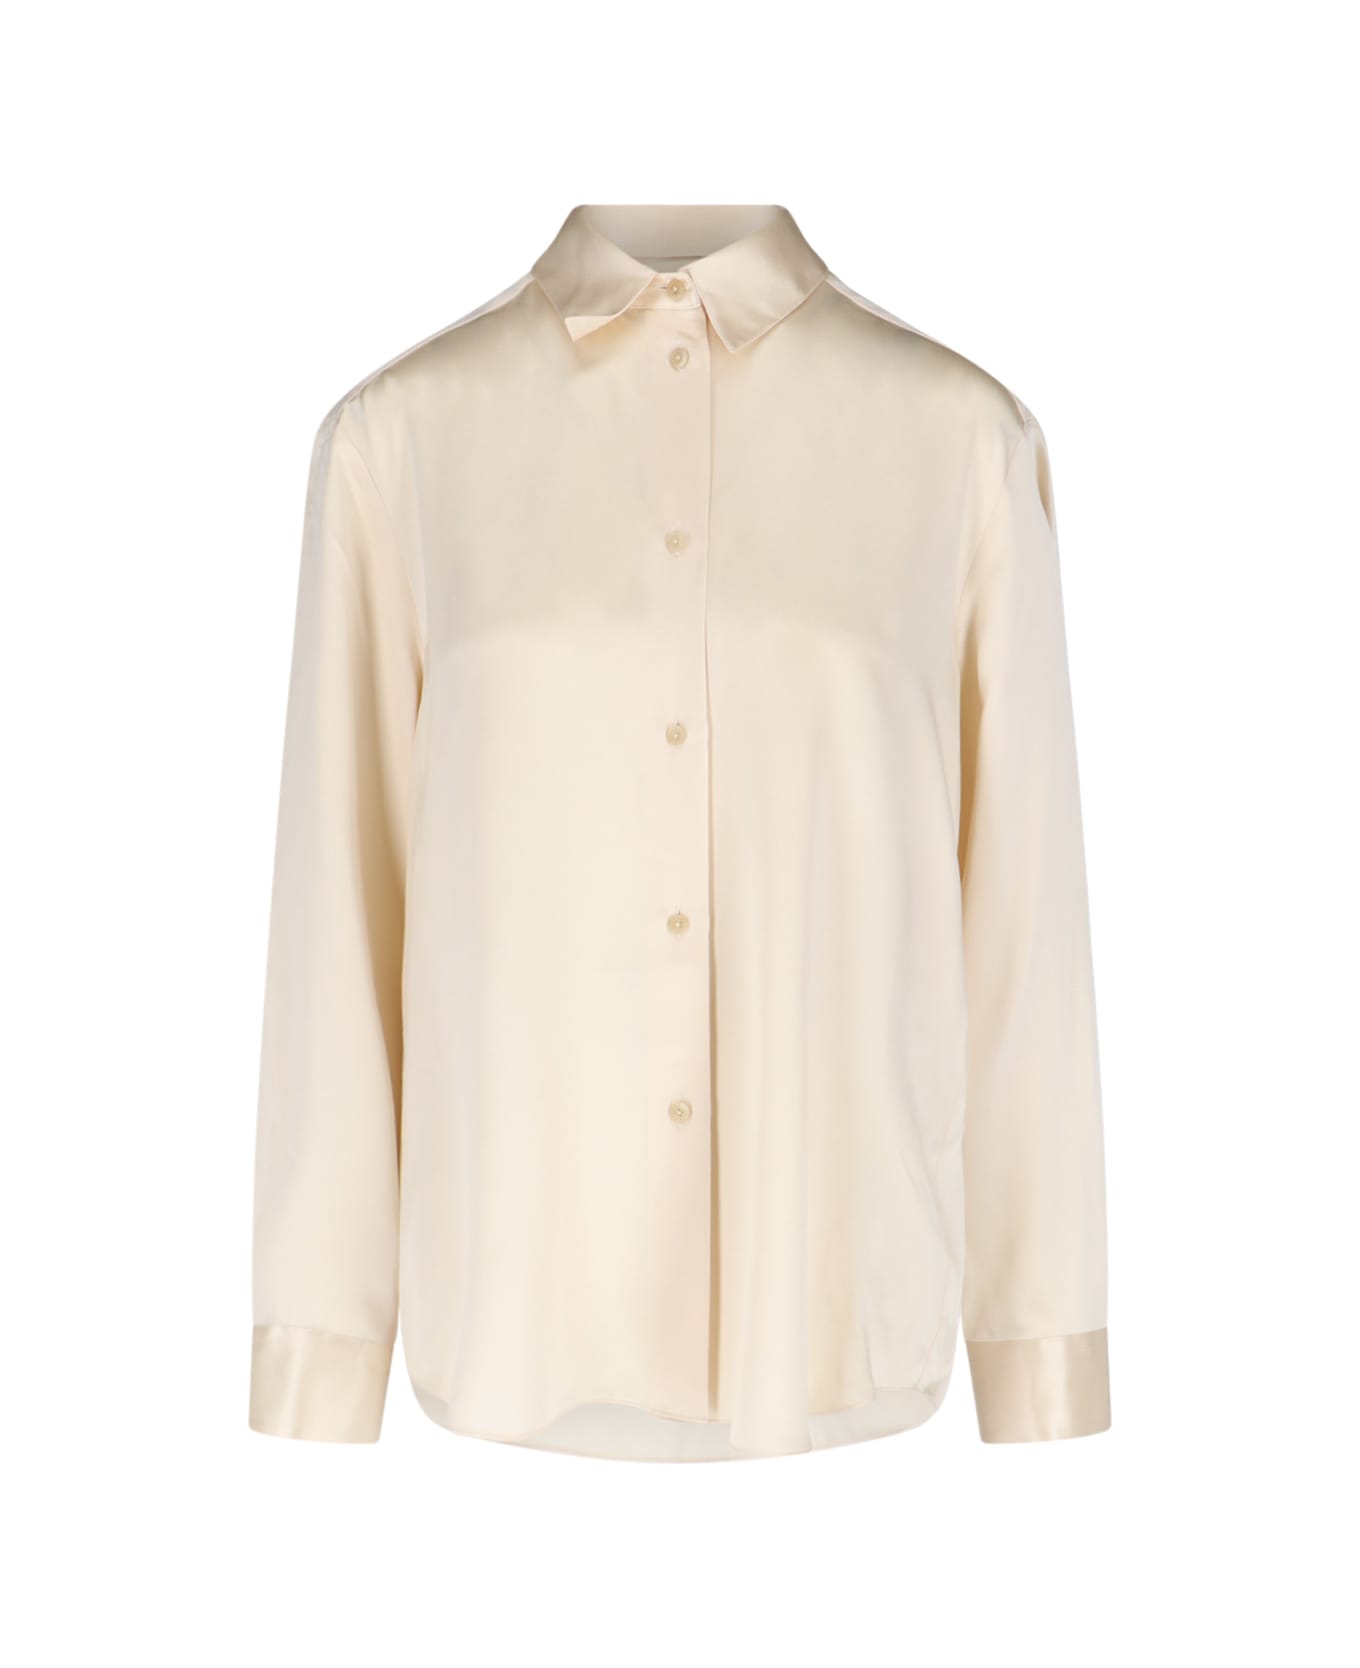 Khaite Silk Shirt - Crema